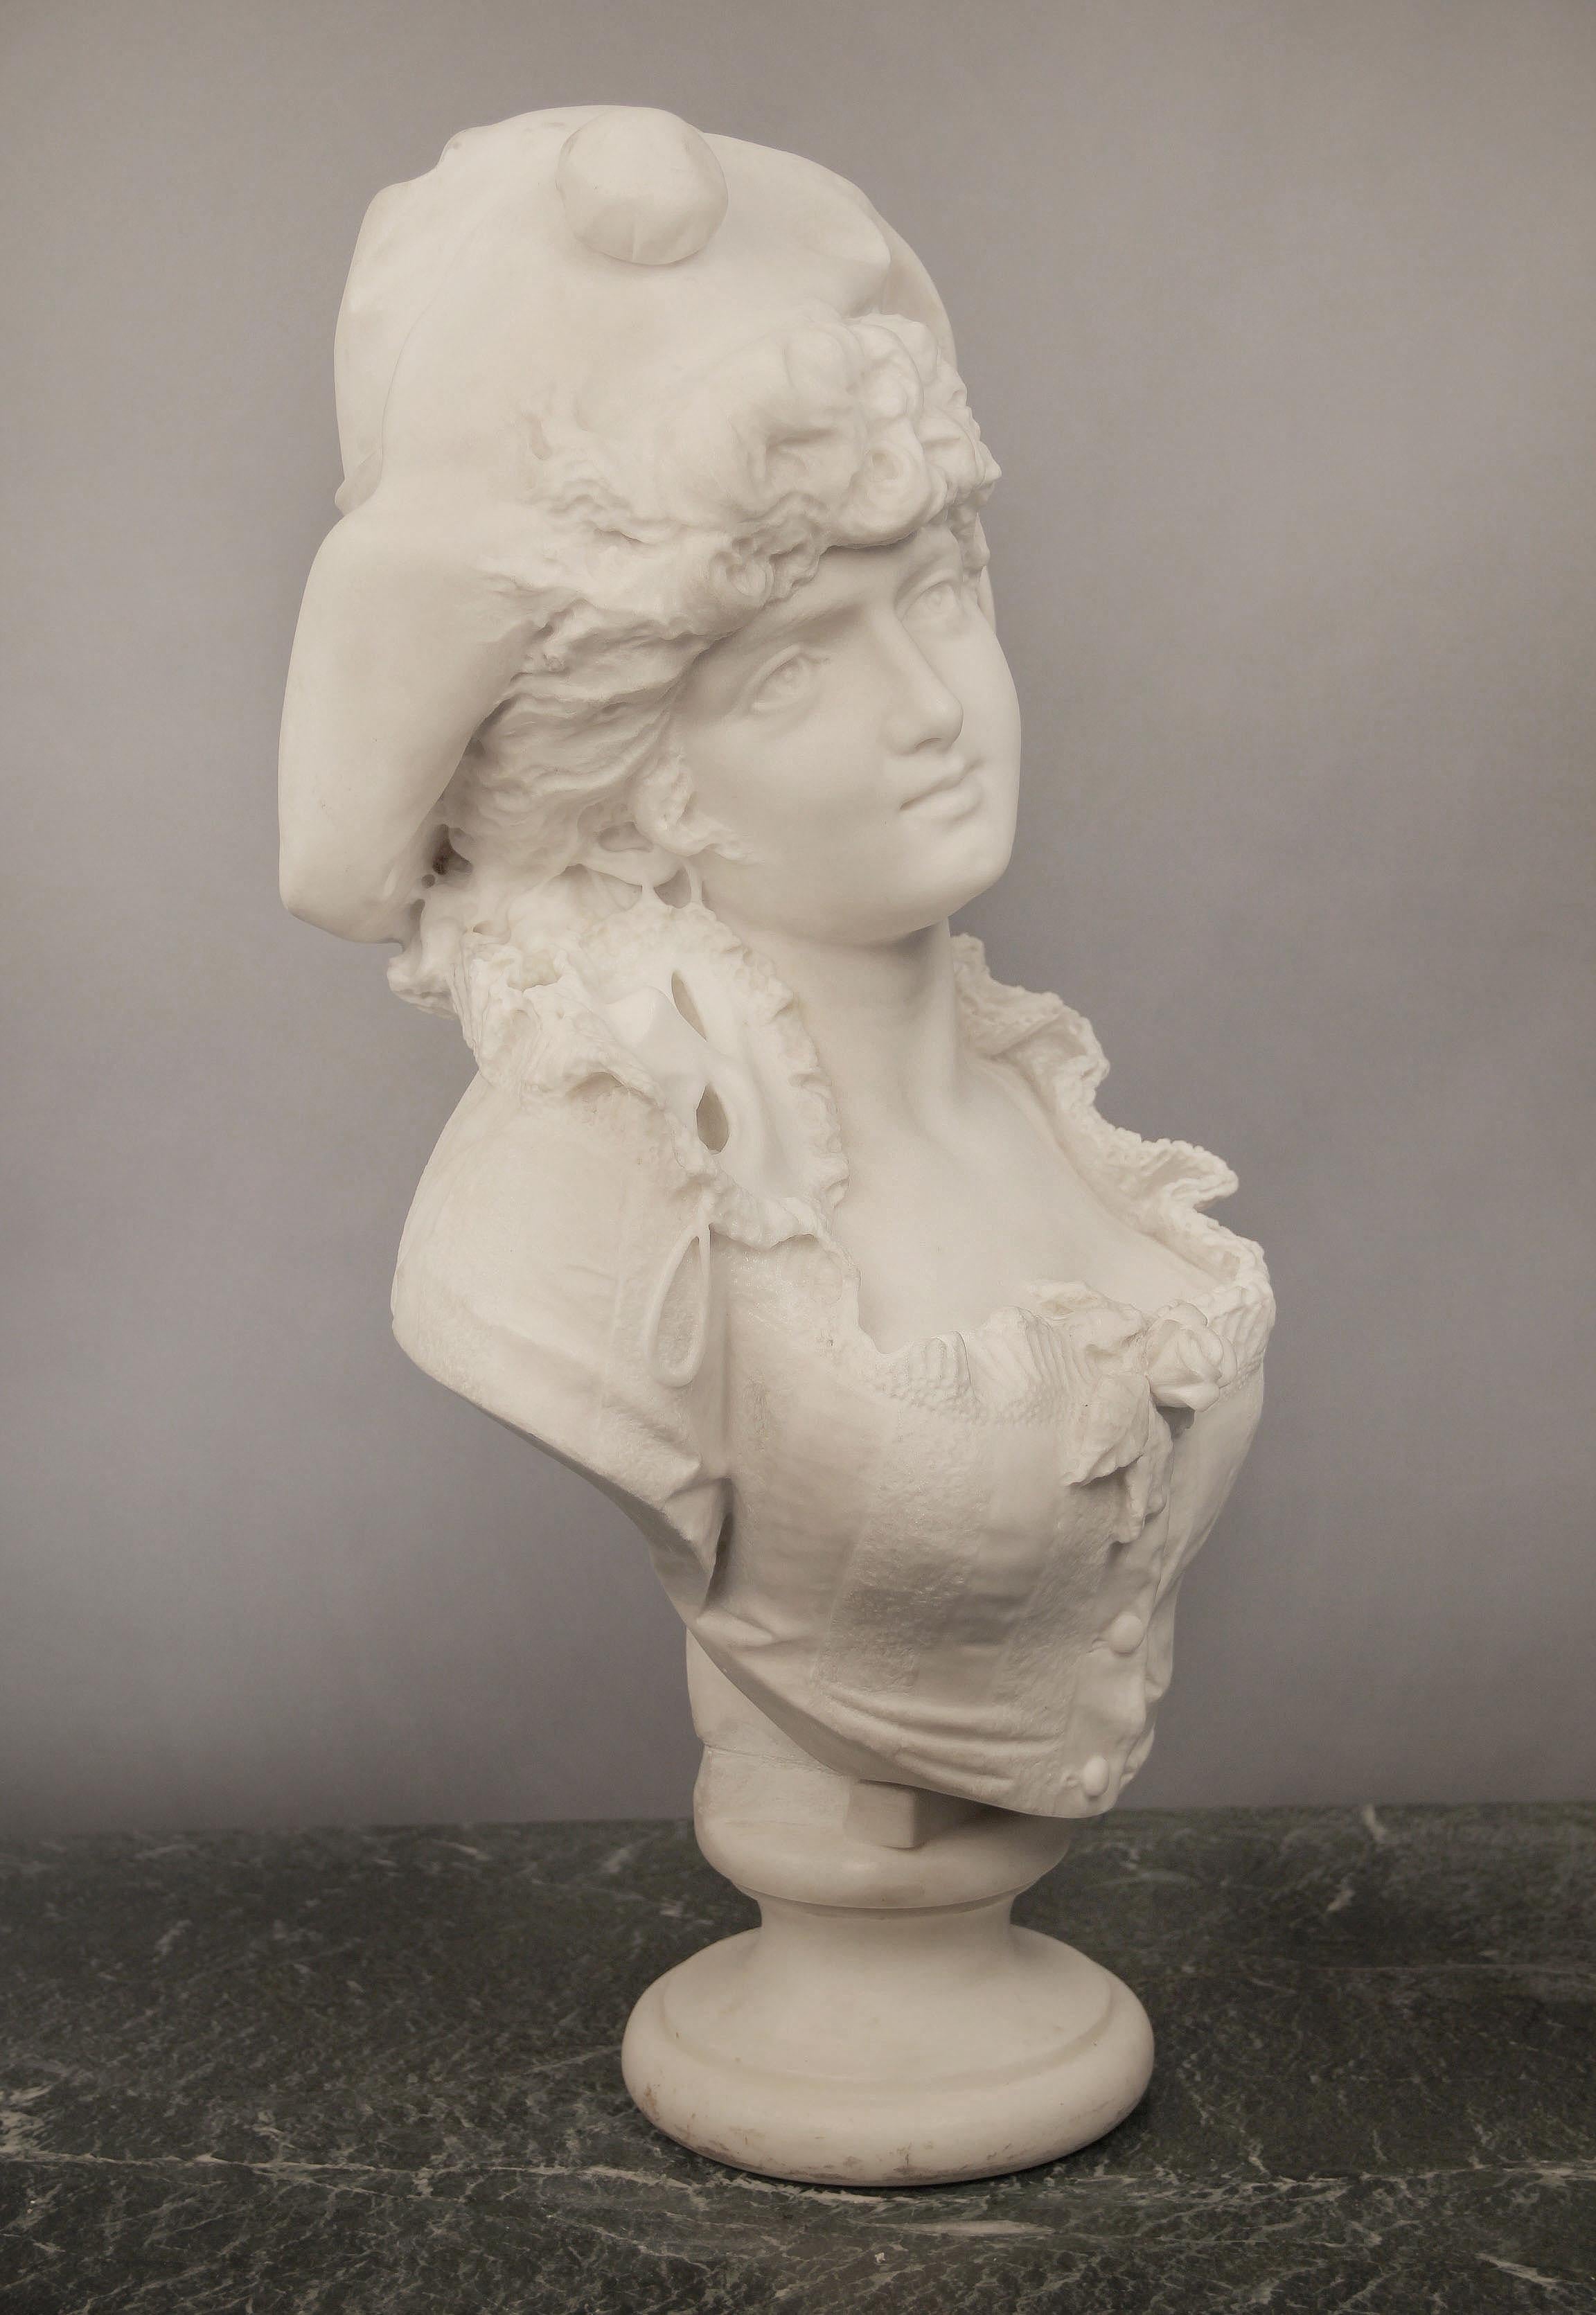 Magnifique buste de femme en marbre blanc de Carrare, datant de la fin du XIXe siècle, réalisé par F. Musaglino.

La femme regarde au loin avec un chapeau couvrant ses cheveux bouclés et un masque de mascarade autour de l'oreille et assis sur son